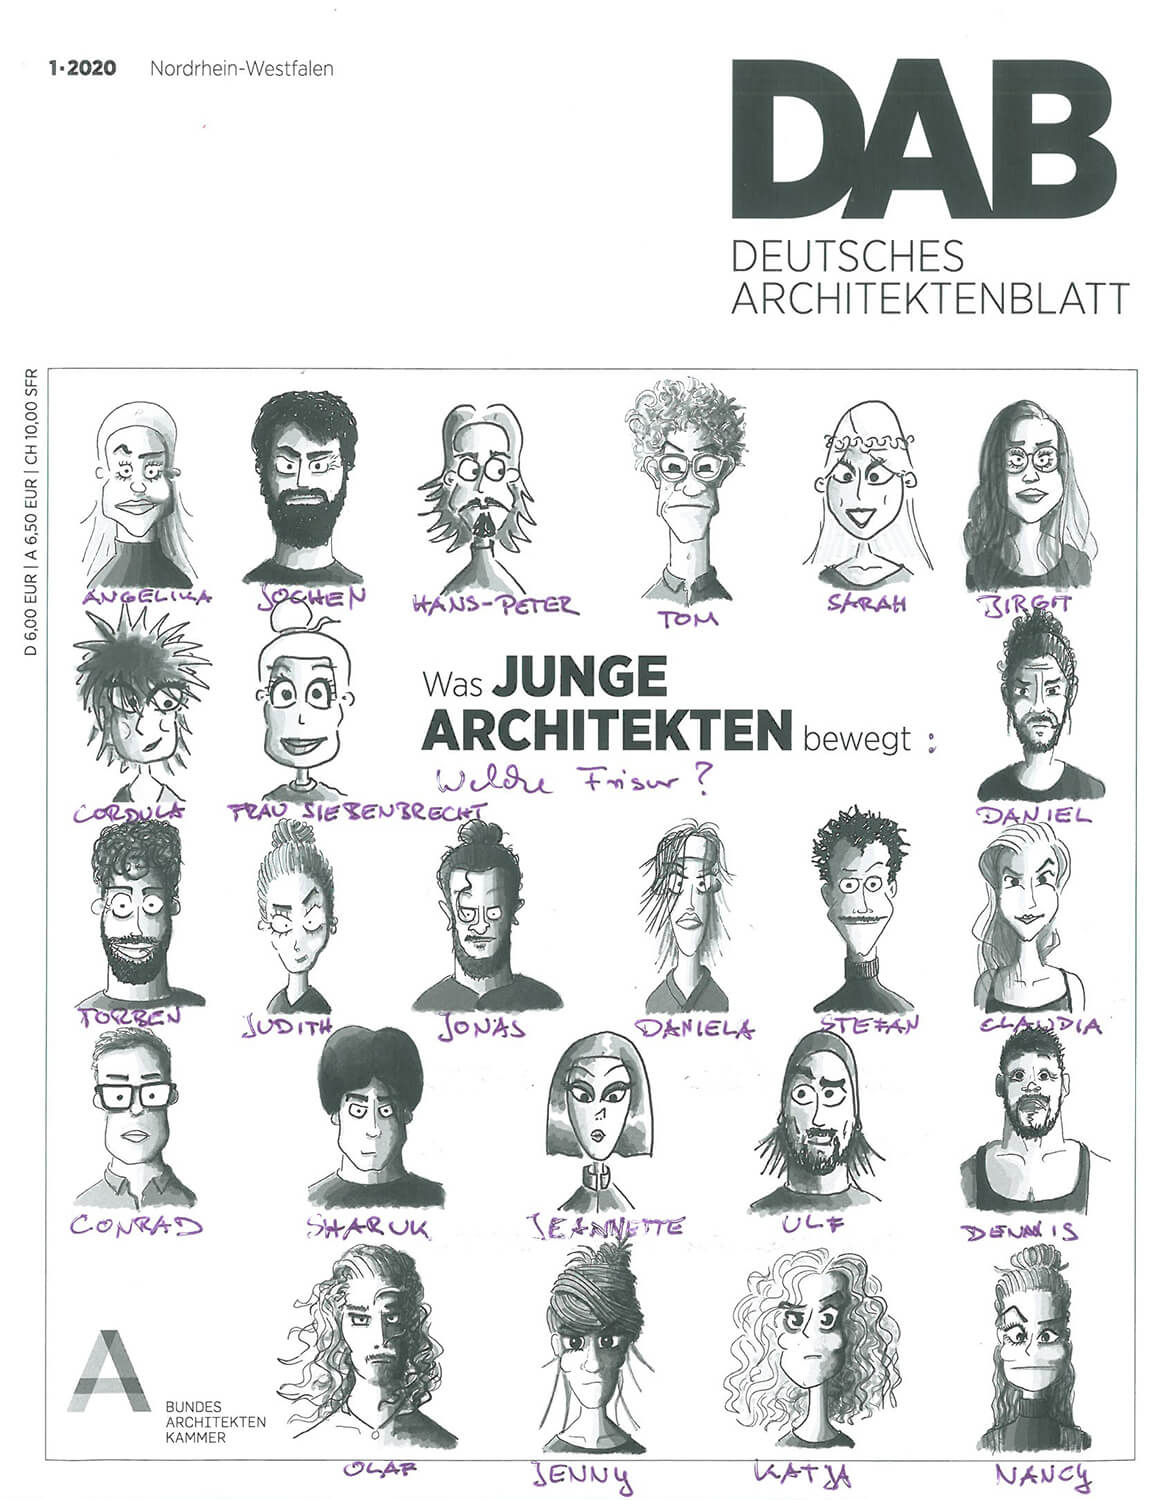 DAB Titelblatt: Was junge Architekten bewegt mit handgeschriebenen Vornamen